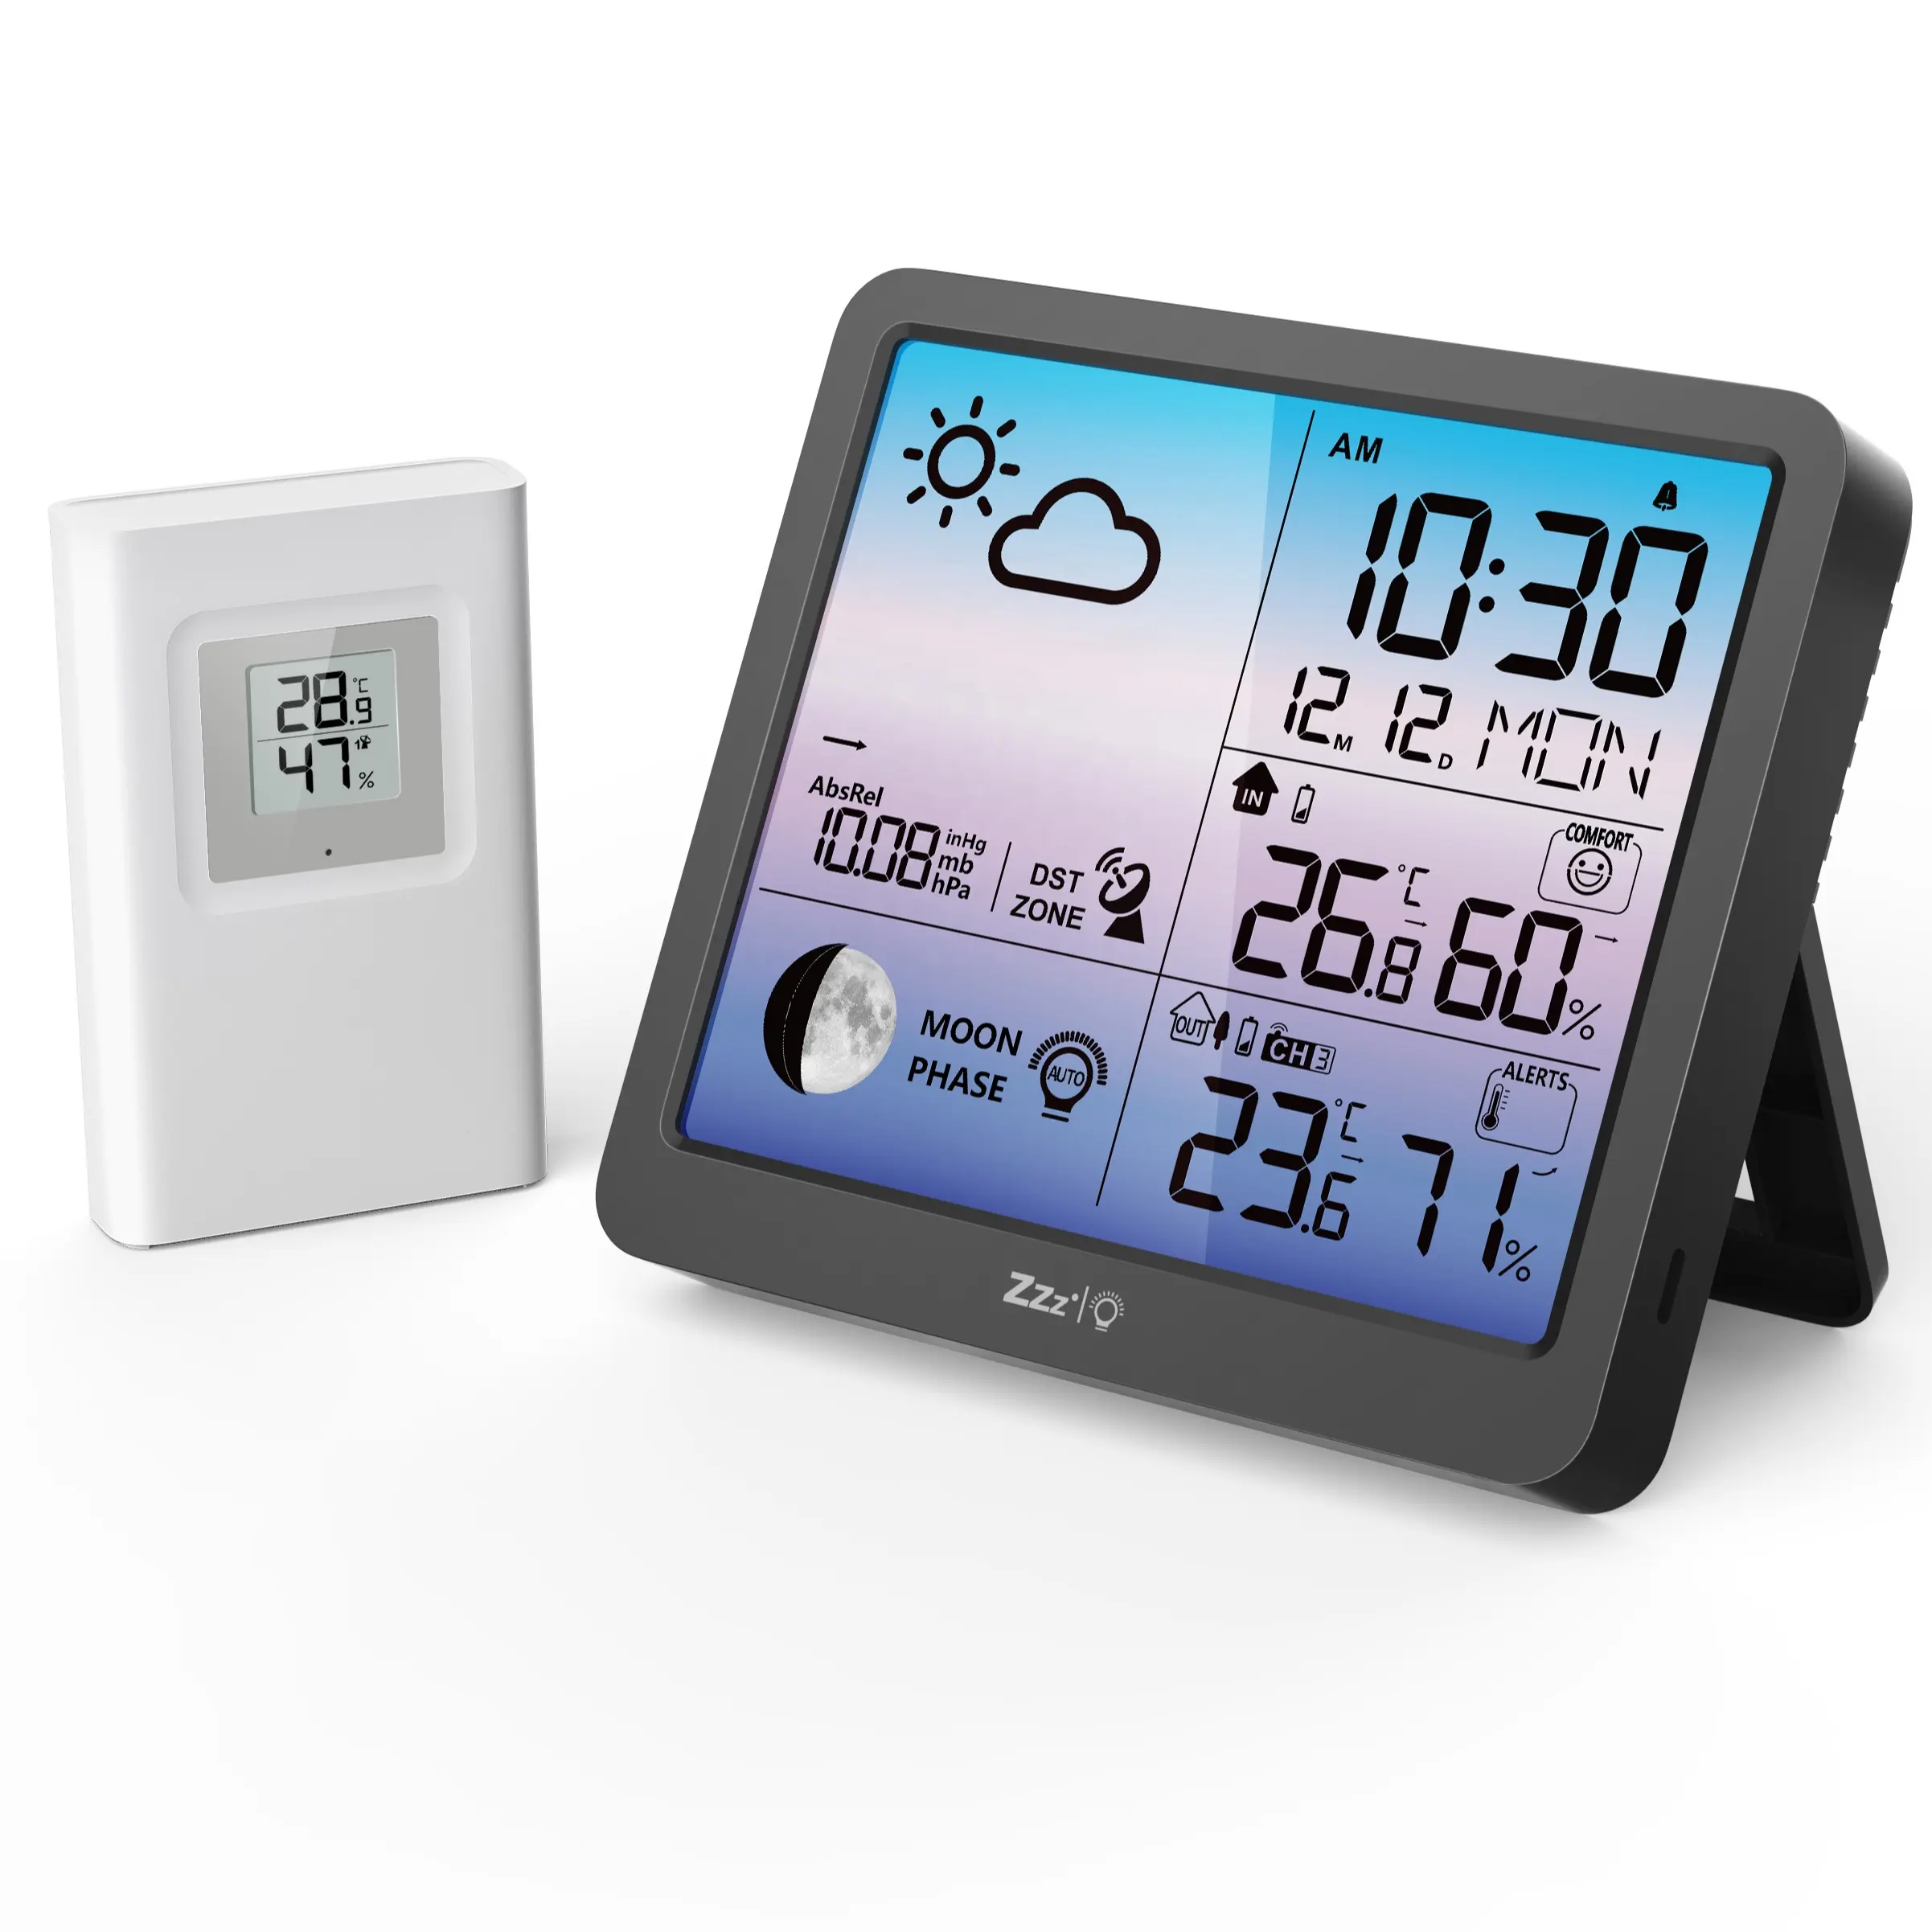 Dijital alarmlı saat saat düşük ışık sensörü erteleme ve büyük ekran akıllı gece lambası LCD seyahat çalar saat ve ev Alarm saati